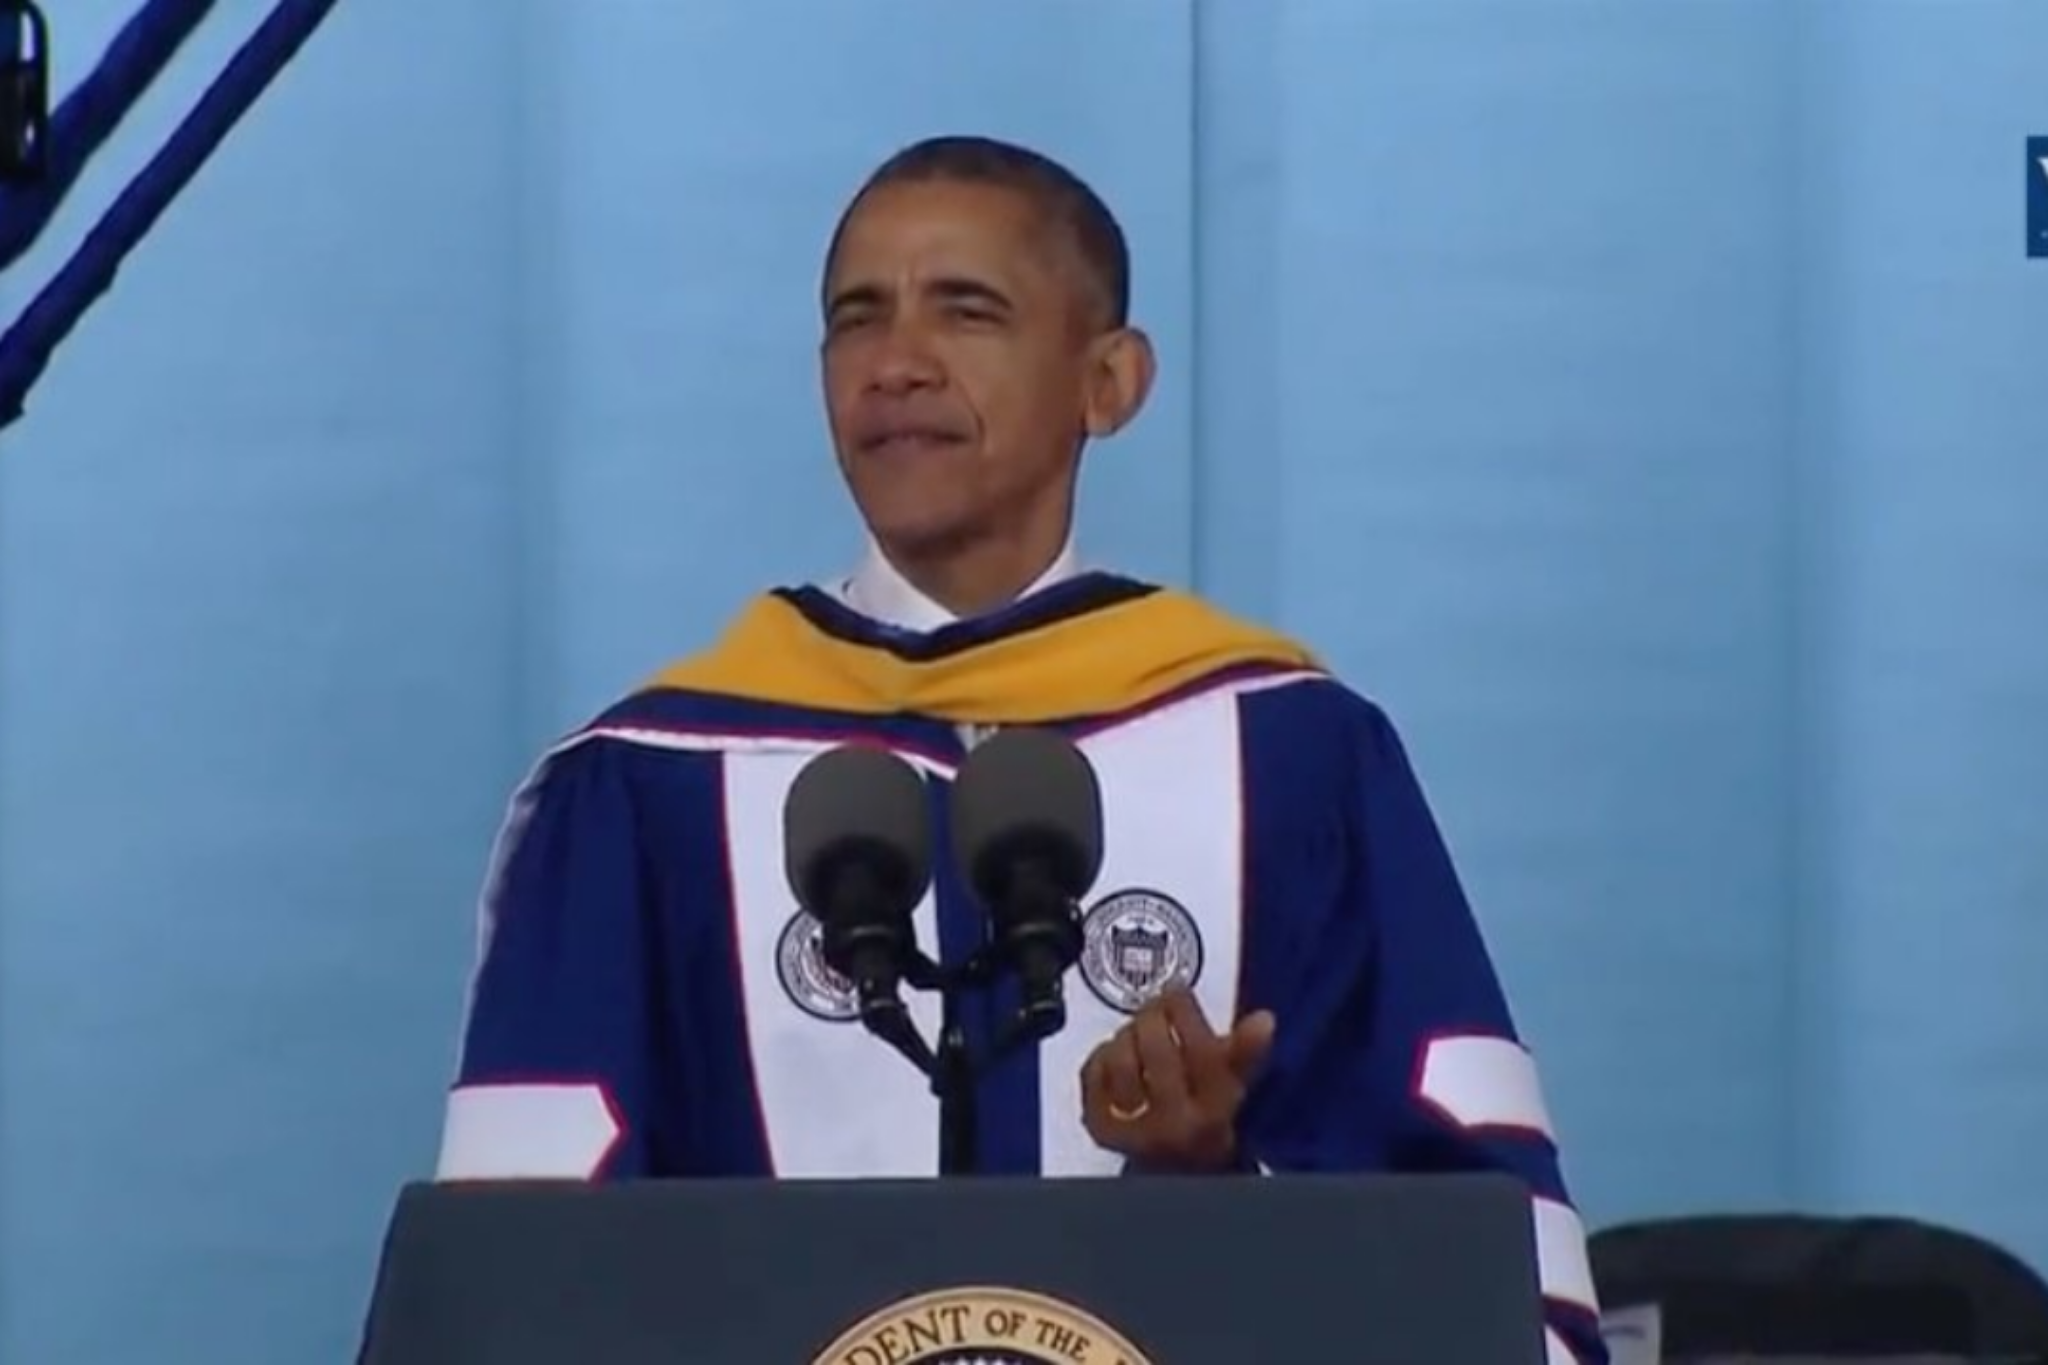 President Obama's Commencement Speech at Howard University